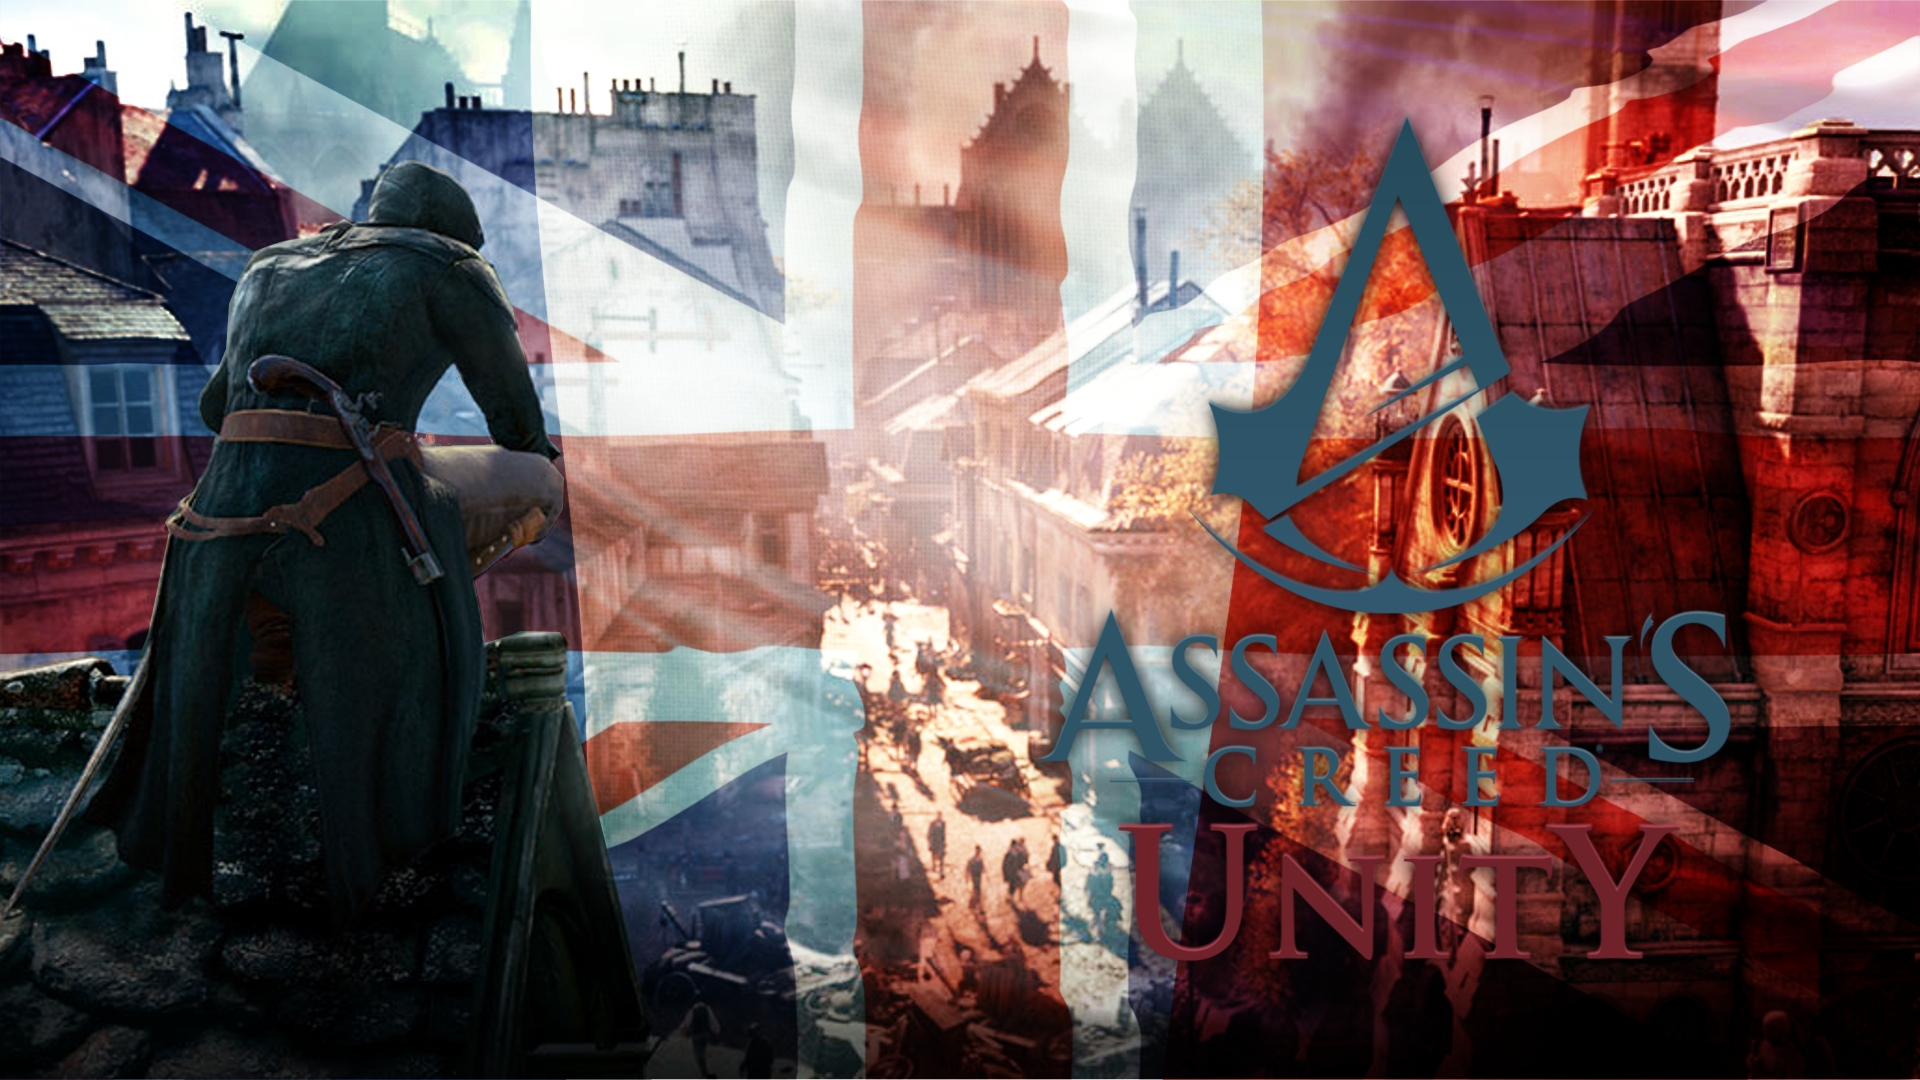 Установка ассасин крид. Ассасин Крид Франция. Assassin's Creed Франция.